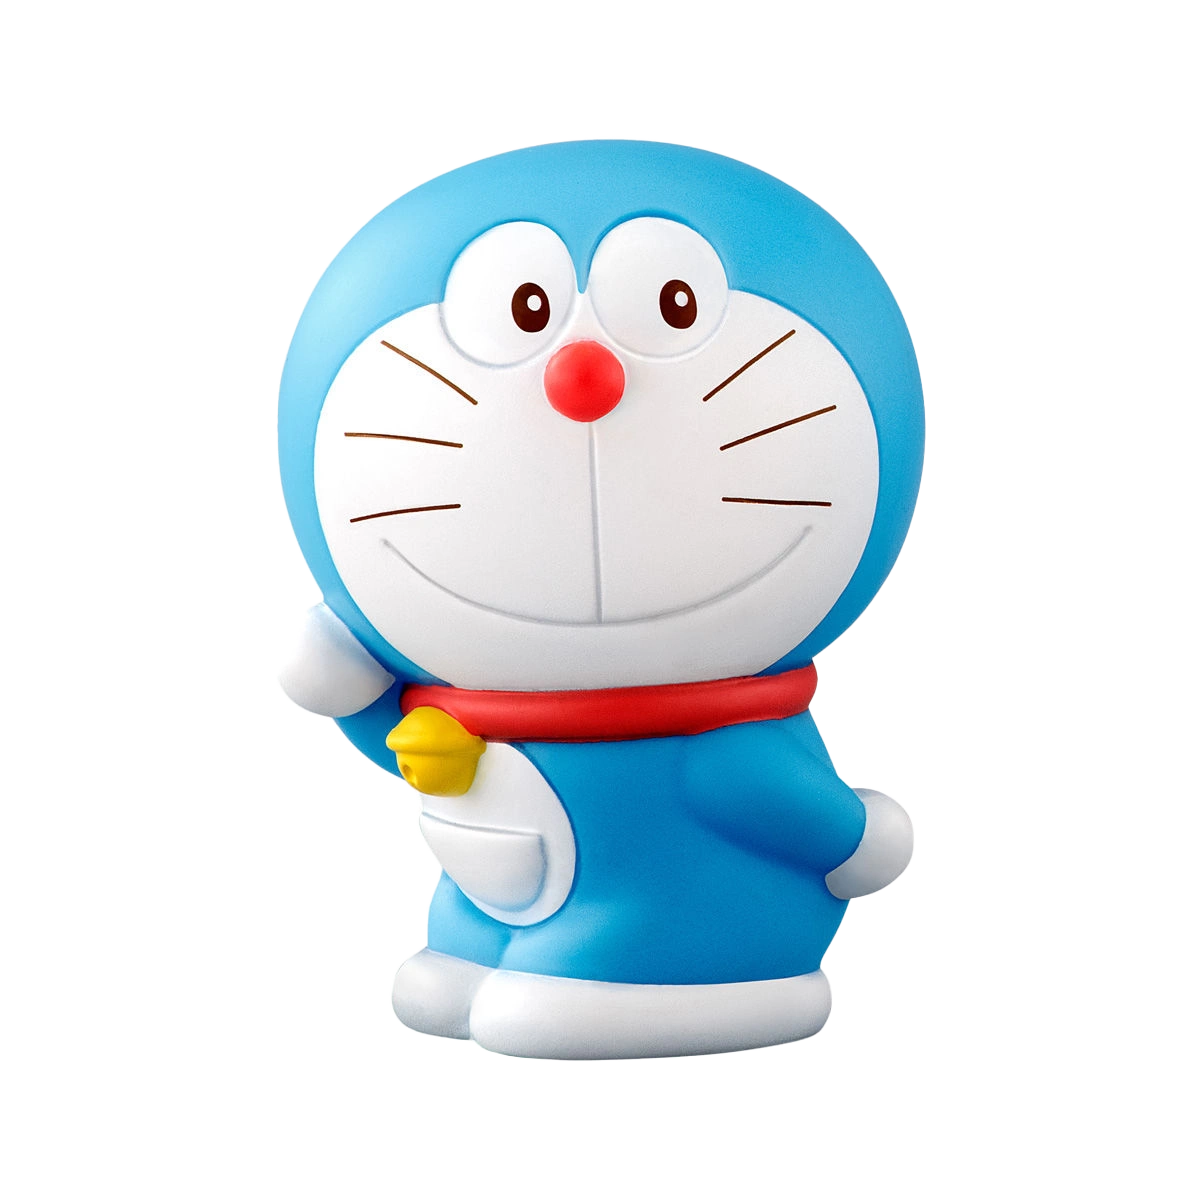 [BANDAI] DORAEMON - MASCOT I AM Doraemon Series Blind Box